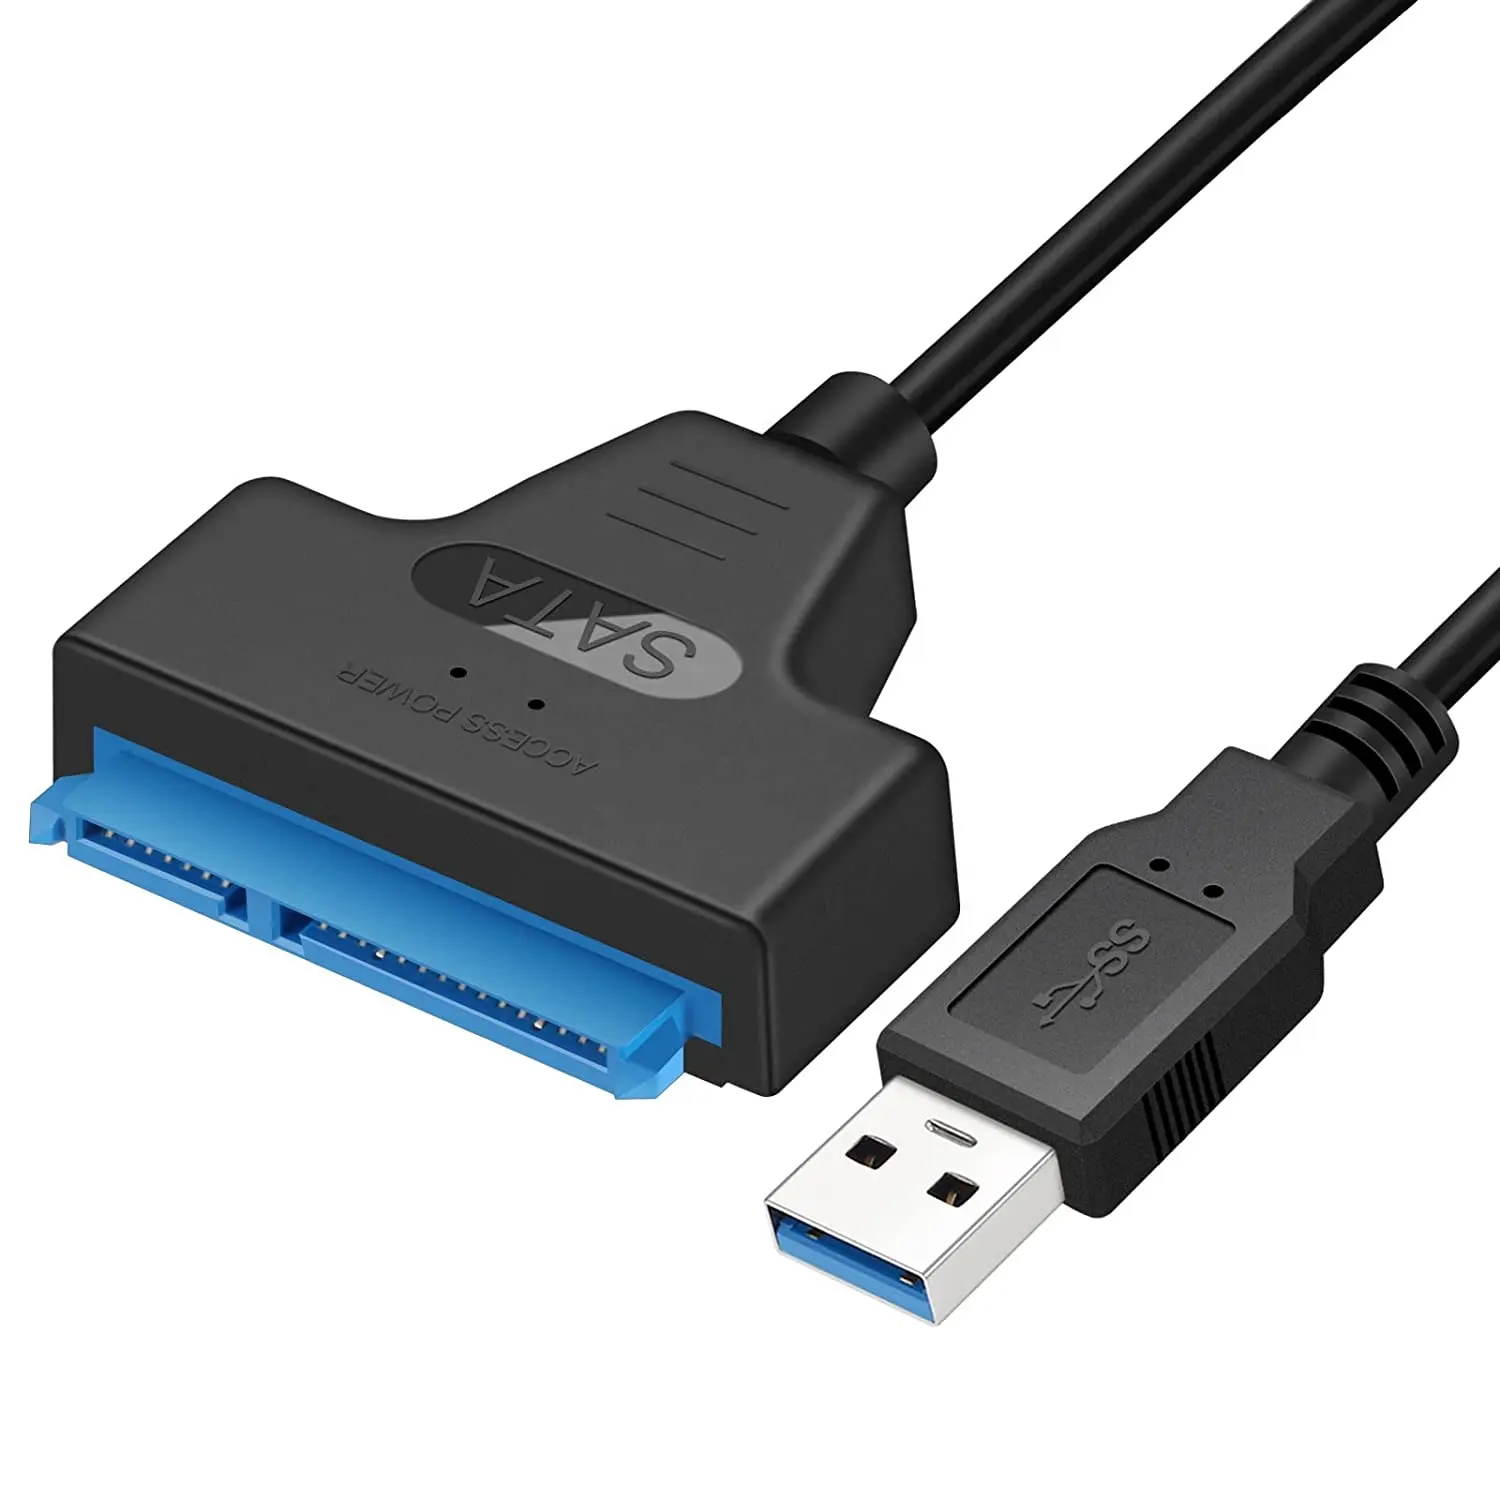 SATA เป็นสาย USB,ตัวแปลงฮาร์ดไดรฟ์ USB 3.0เป็น SATA III สำหรับการถ่ายโอนข้อมูล SSD และ HDD ขนาด2.5นิ้วรองรับ UASP